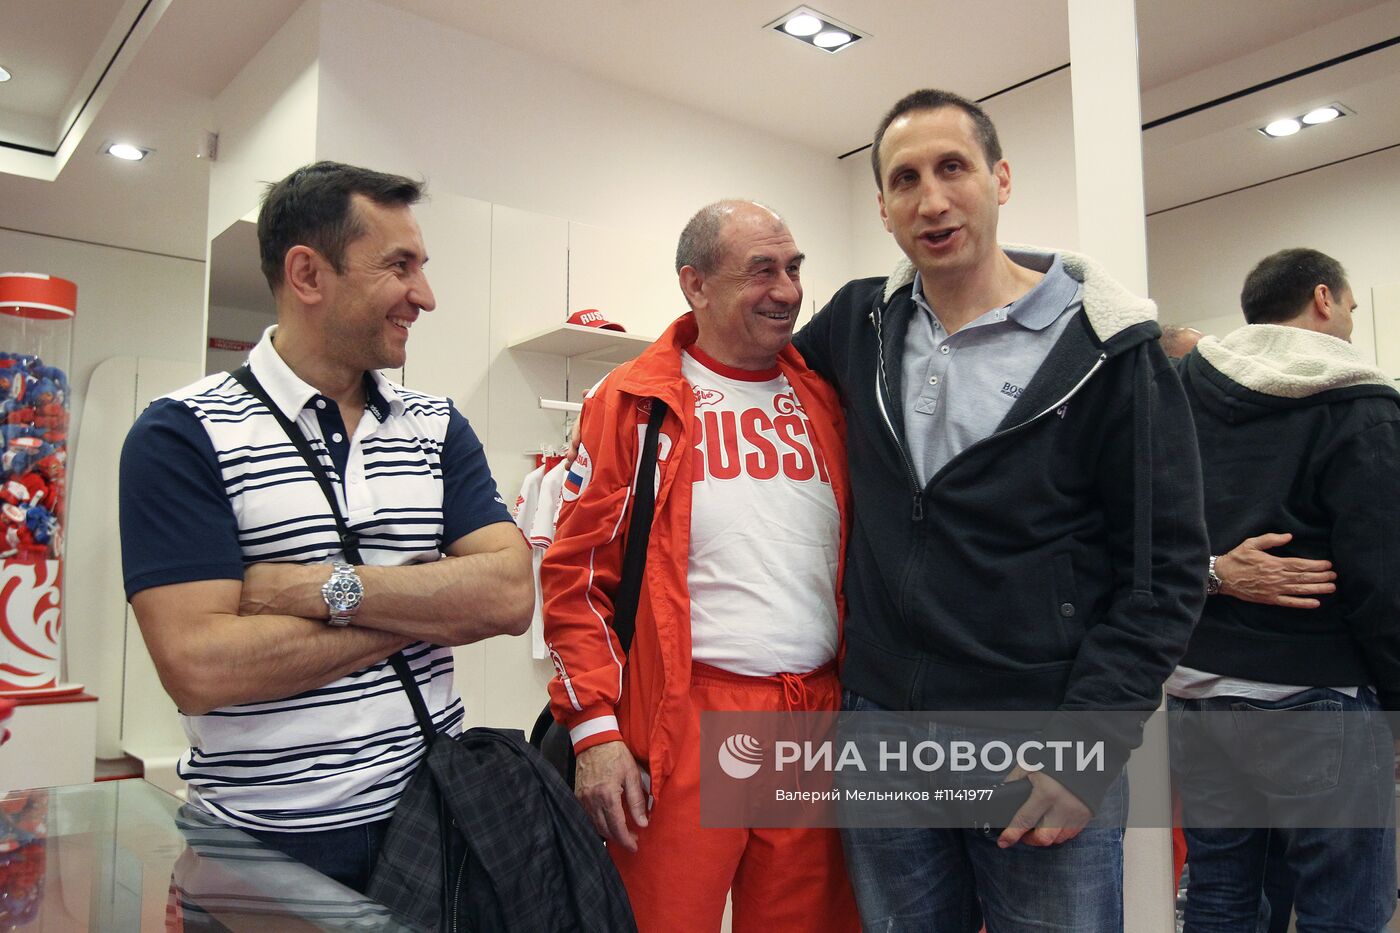 Баскетбол. Экипировка мужской сборной России в Bosco sport